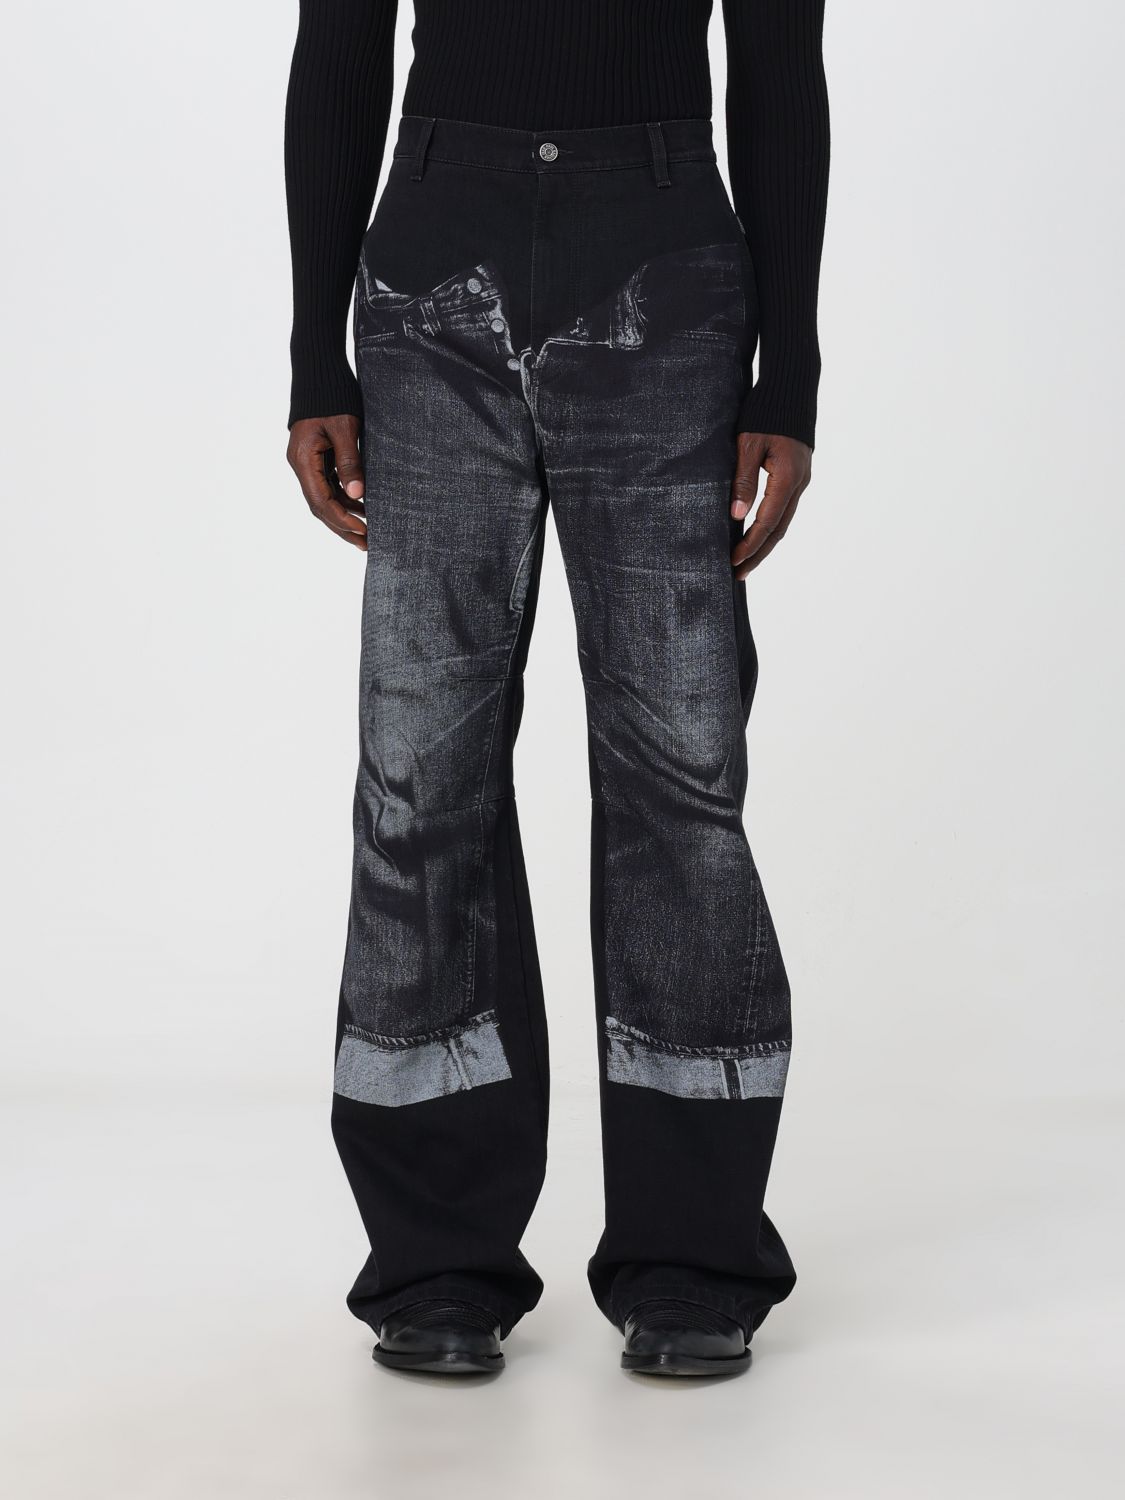 jeans jean paul gaultier men colour black